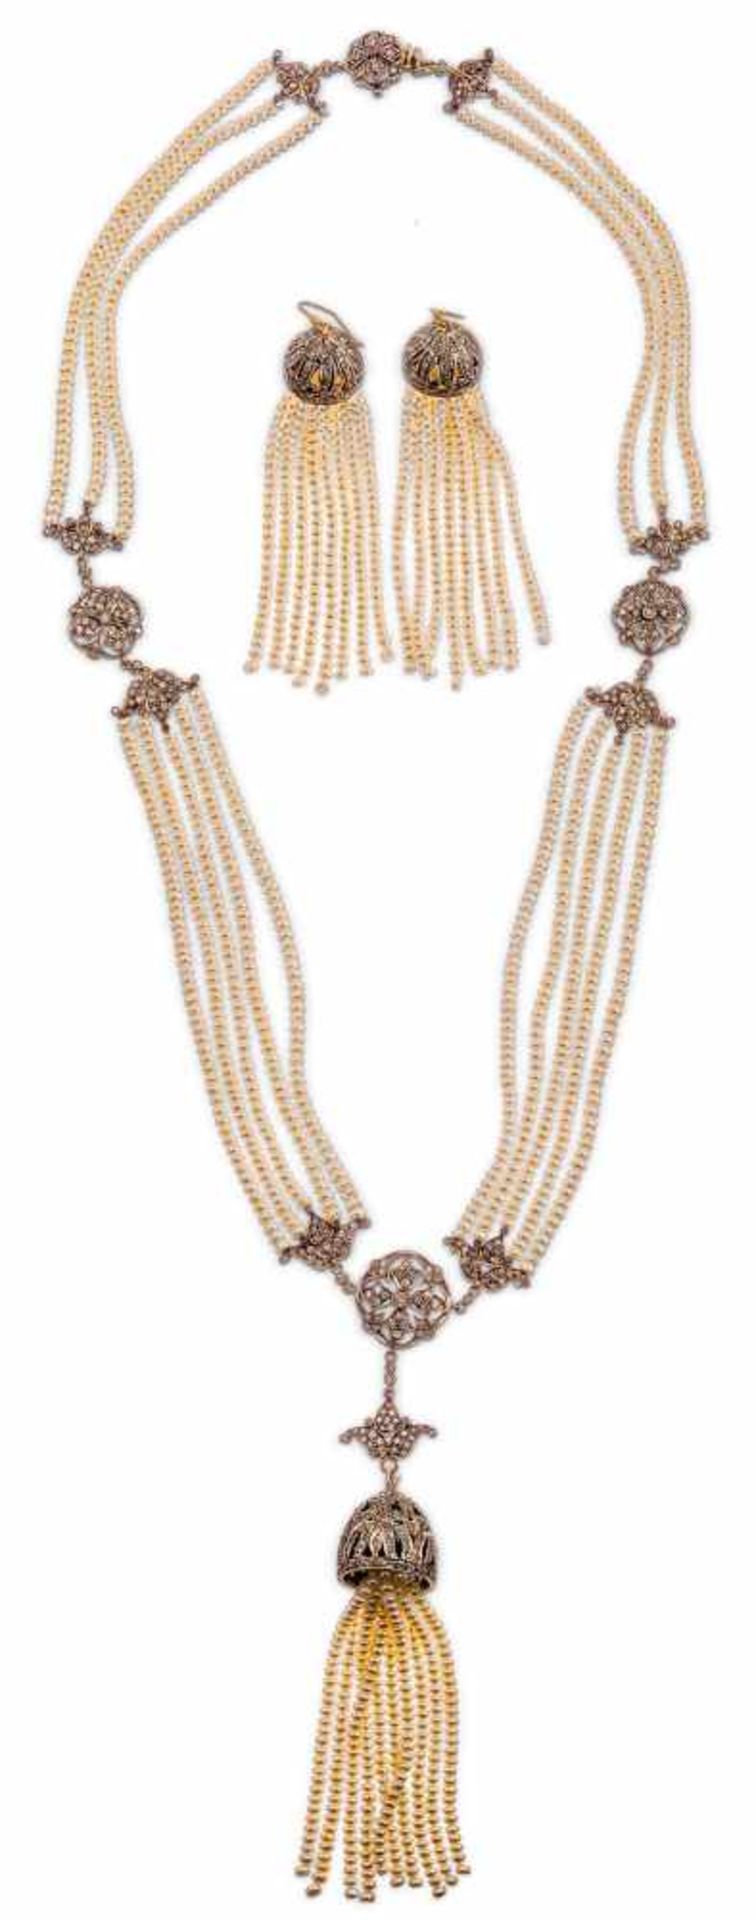 Langes Perl-Diamant-Halsbandmit Quastenanhänger. Silber u. Gold. Aus je fünf bzw. je drei